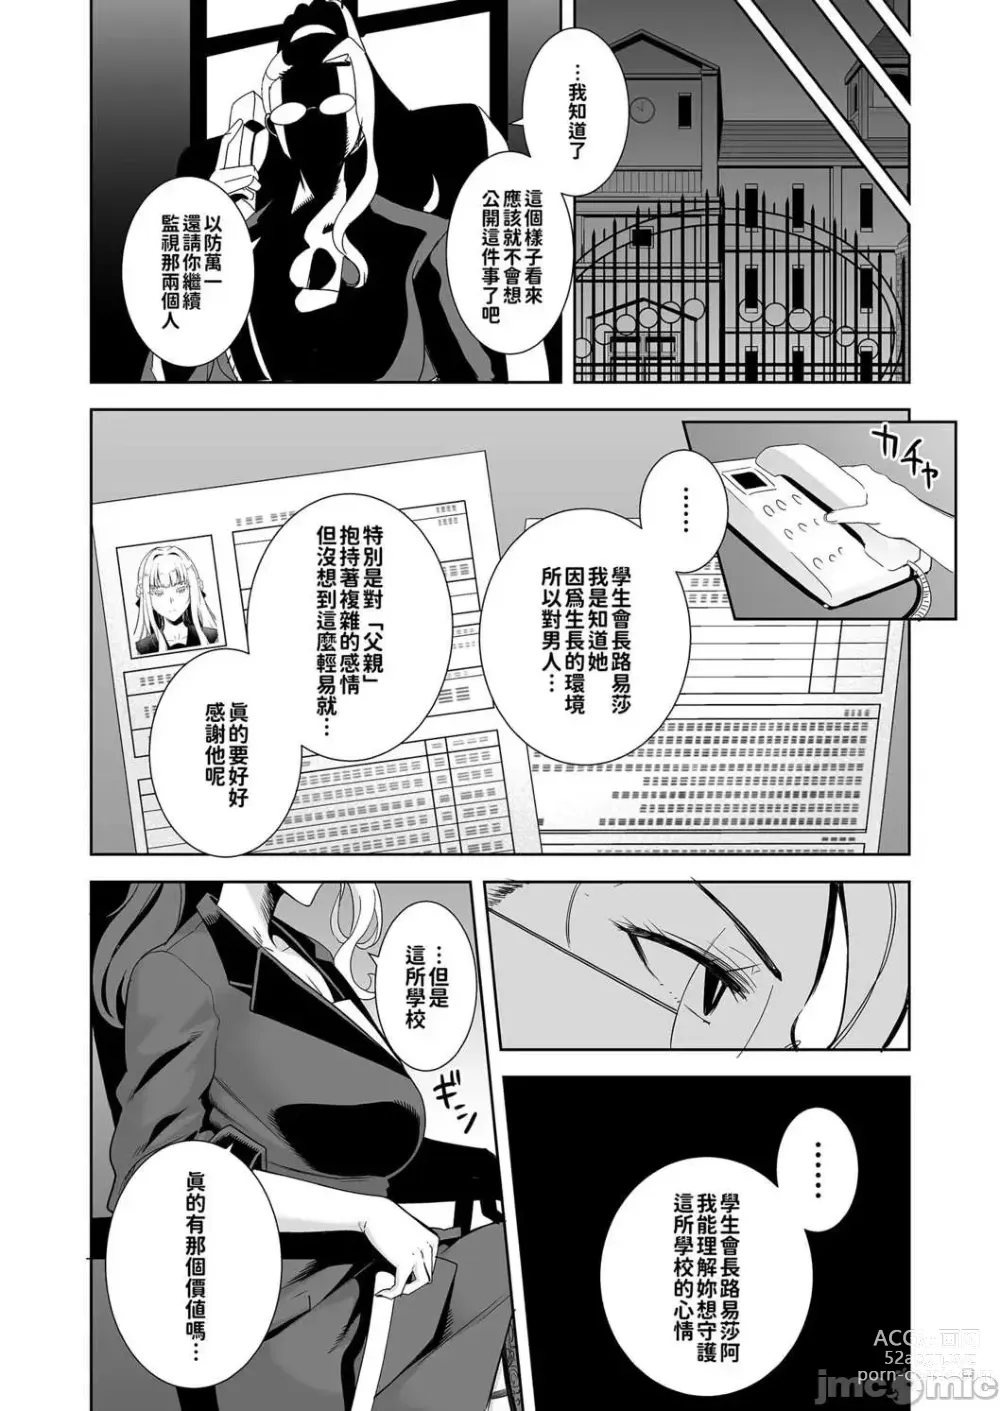 Page 43 of doujinshi dZCZsdfgsd4